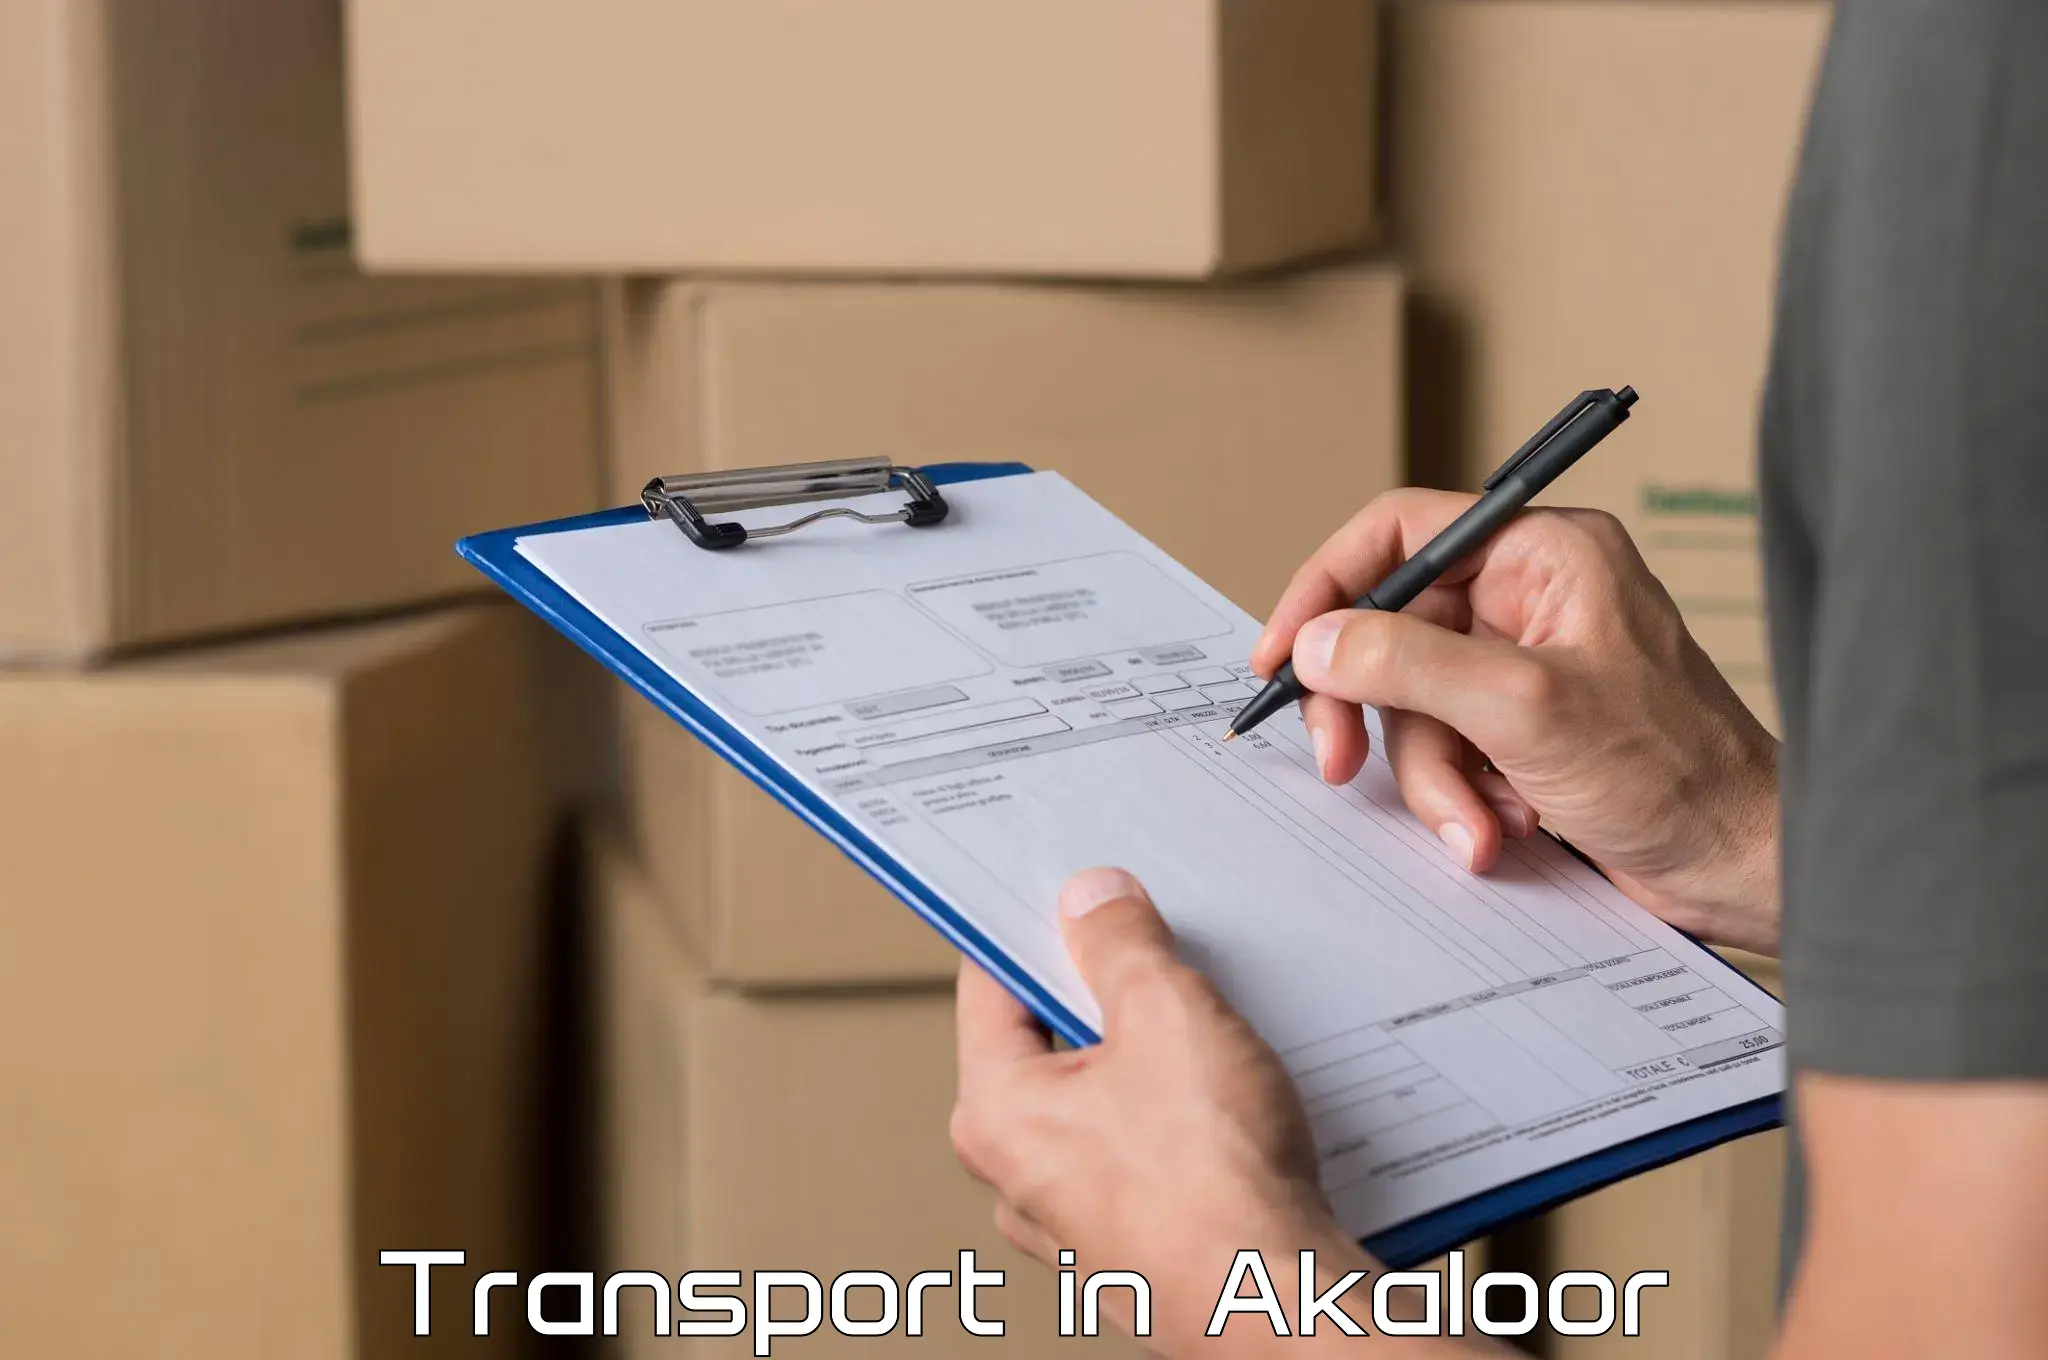 Online transport in Akaloor